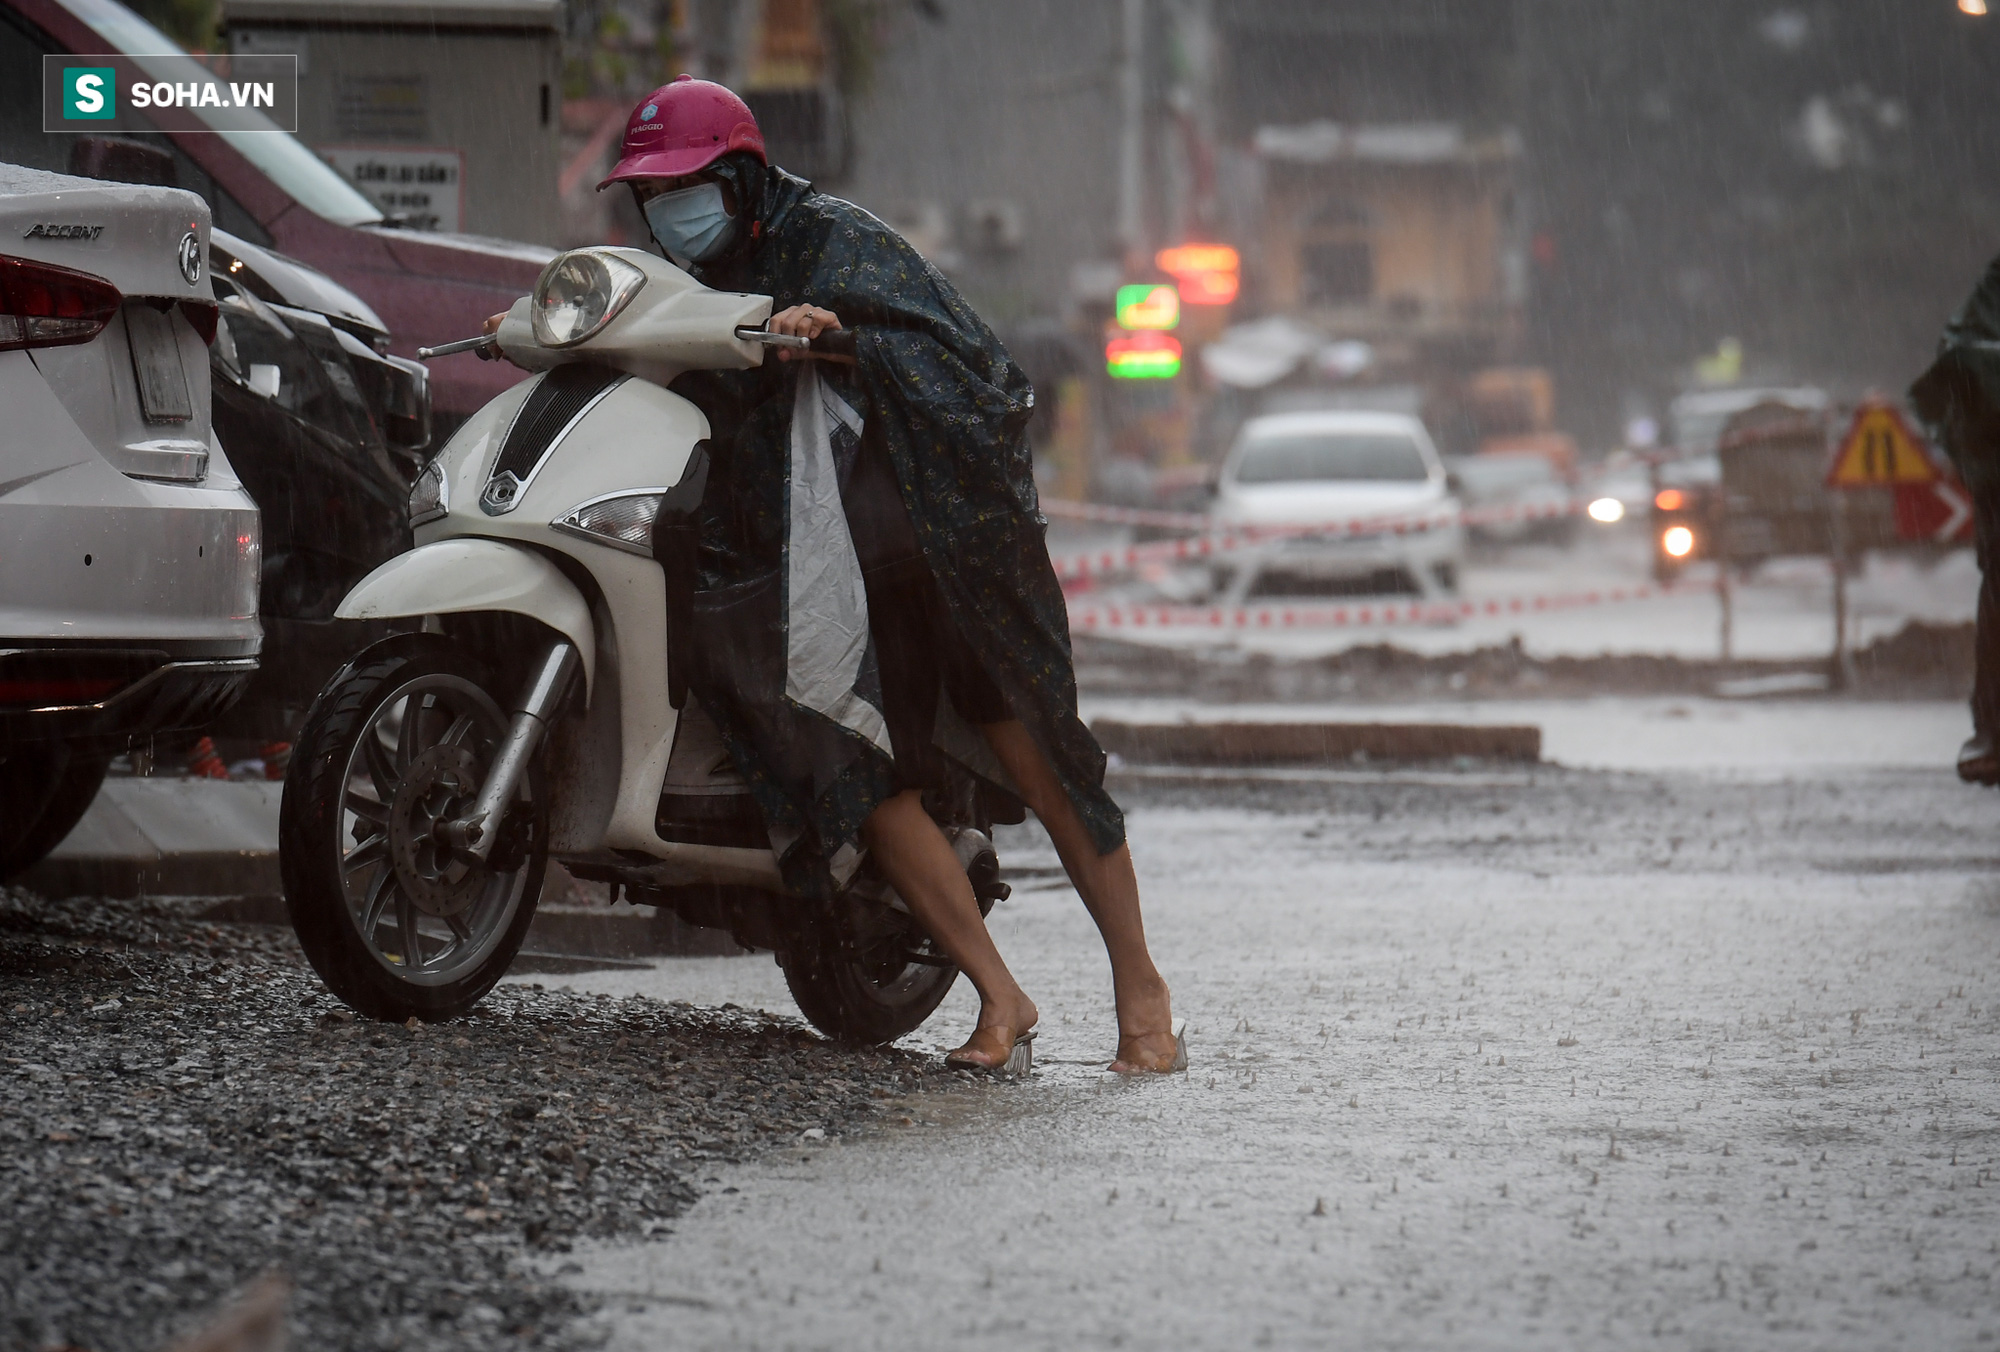 Đường phố Hà Nội tắc cứng trong mưa sáng đầu tuần, ô tô dàn hàng 6 chiếm hết lòng đường - Ảnh 8.